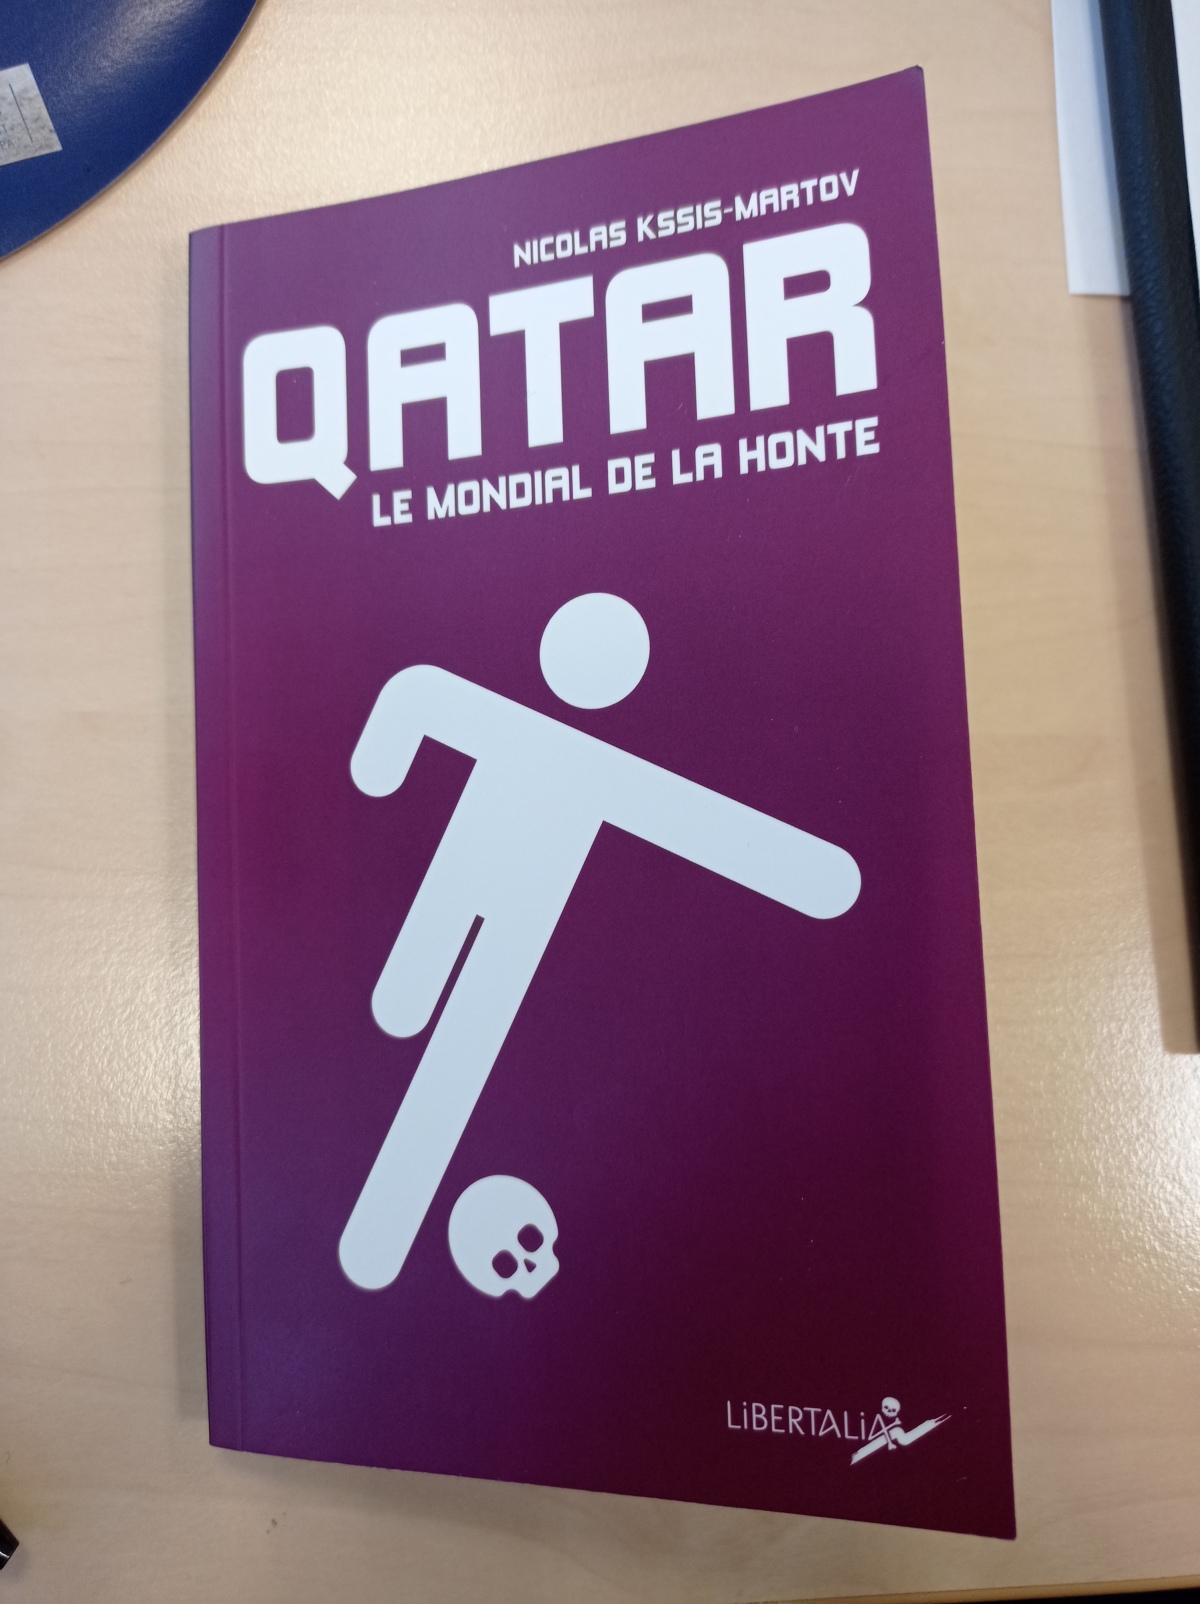 Qatar, le Mondial de la honte / Nicolas Kssis Martov